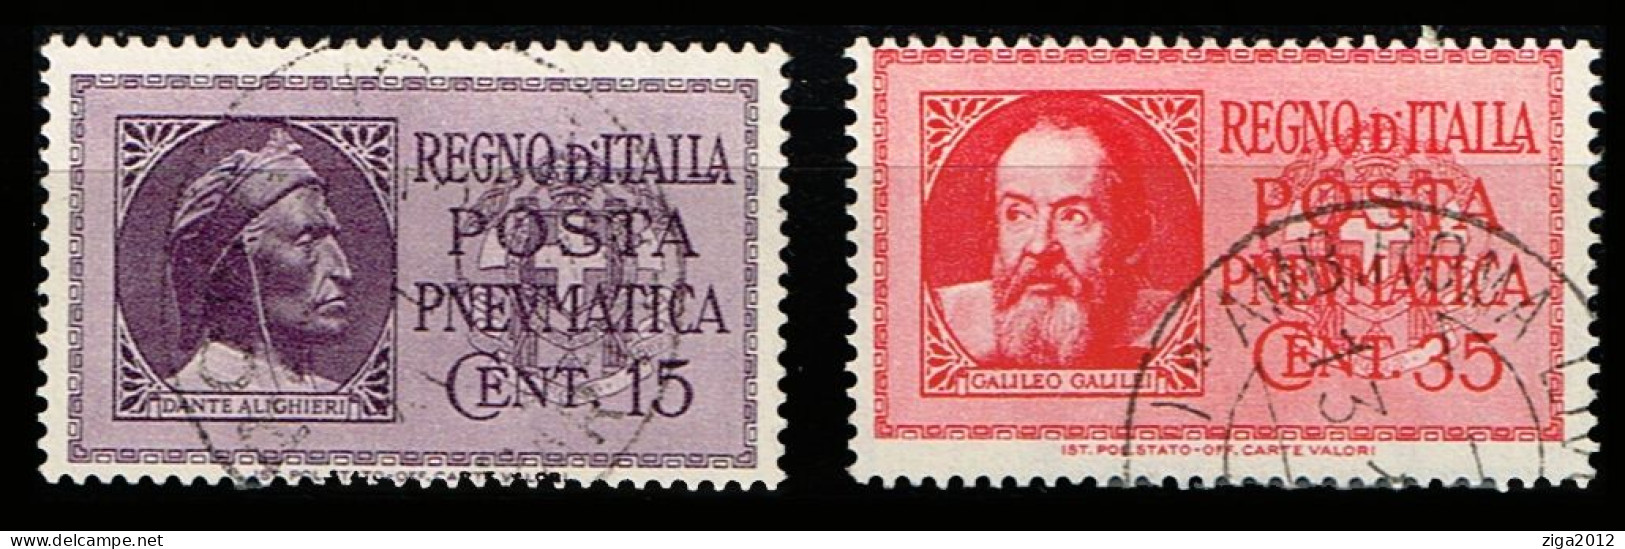 ITALY 1933 SERIE COMPLETA DEI FRANCOBOLLI DI POSTA PNEUMATICA - ANNULLATI - Correo Neumático